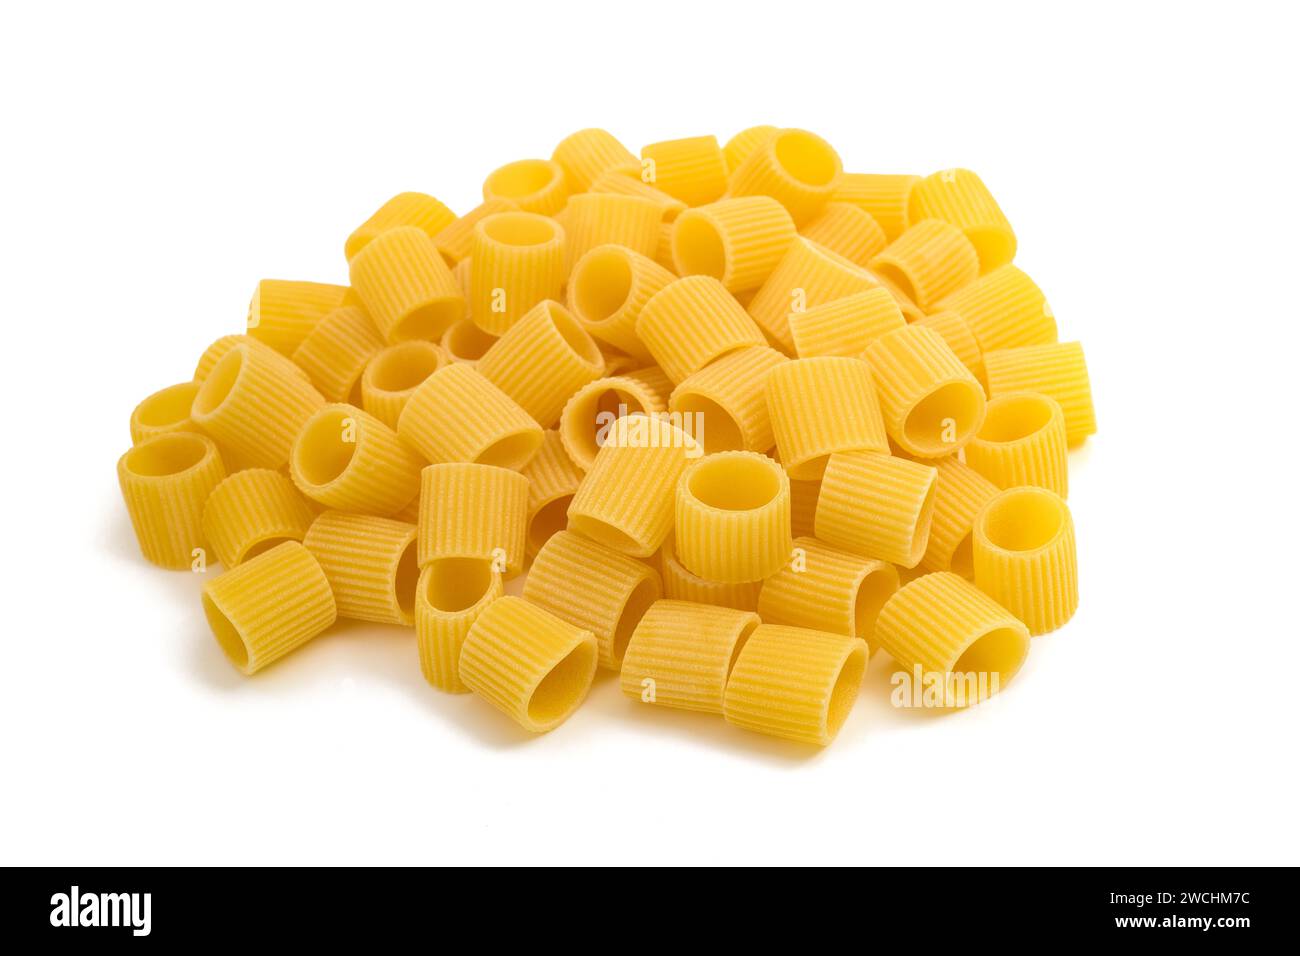 Mezze maniche pasta pile isolated on white background Stock Photo